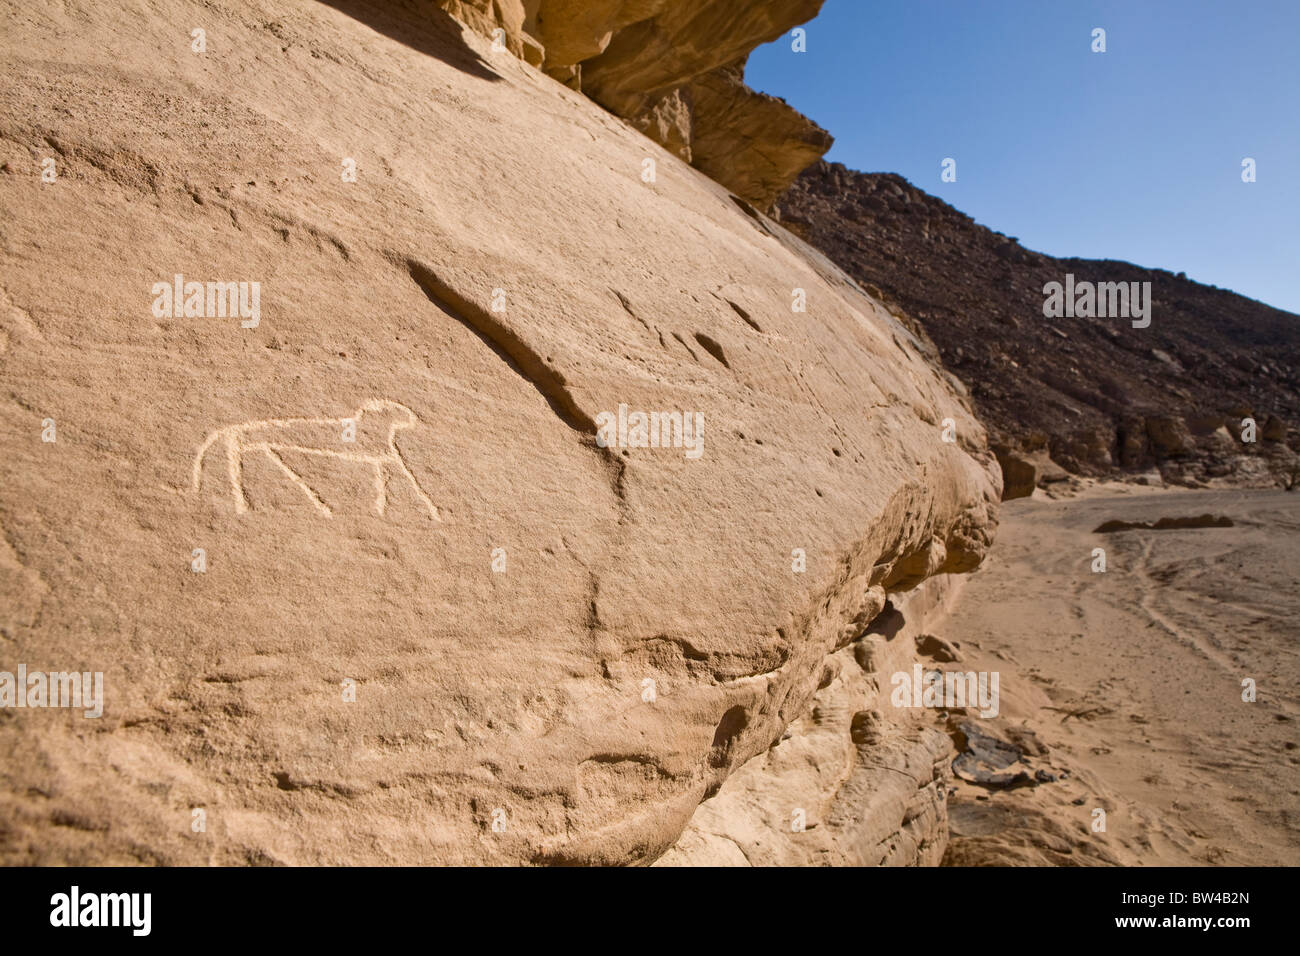 Uralte Felsmalereien zeigen Darstellungen von wild lebenden Tier möglicherweise Katze in einem Wadi in der östlichen Wüste von Ägypten. Stockfoto